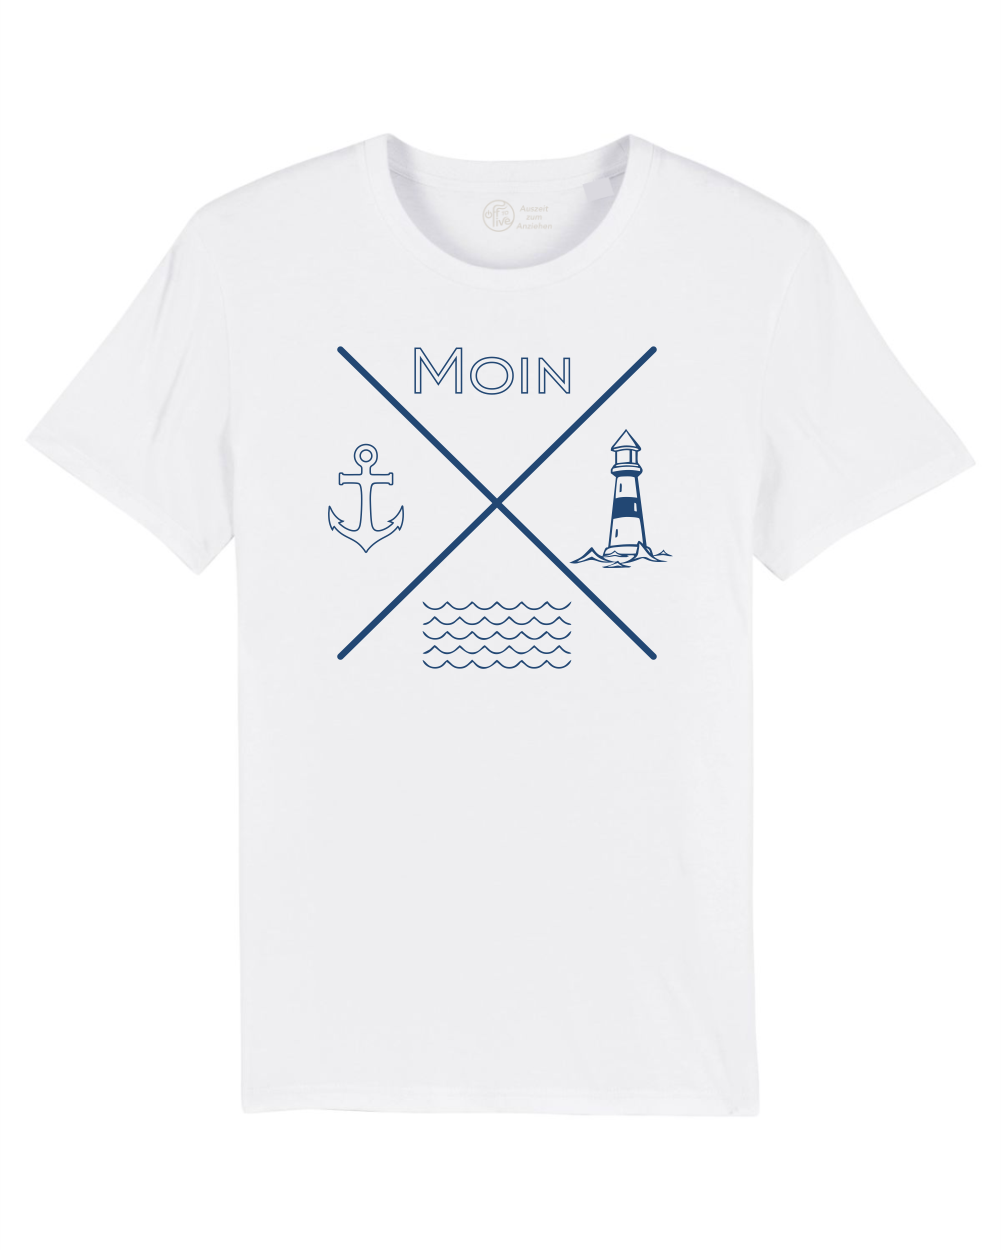 Weisses T-Shirt mit Moin Anker Leuchtturm und Wellen. Cooles T Shirt mit maritimen Design. herren TShirt women's T_Shirt